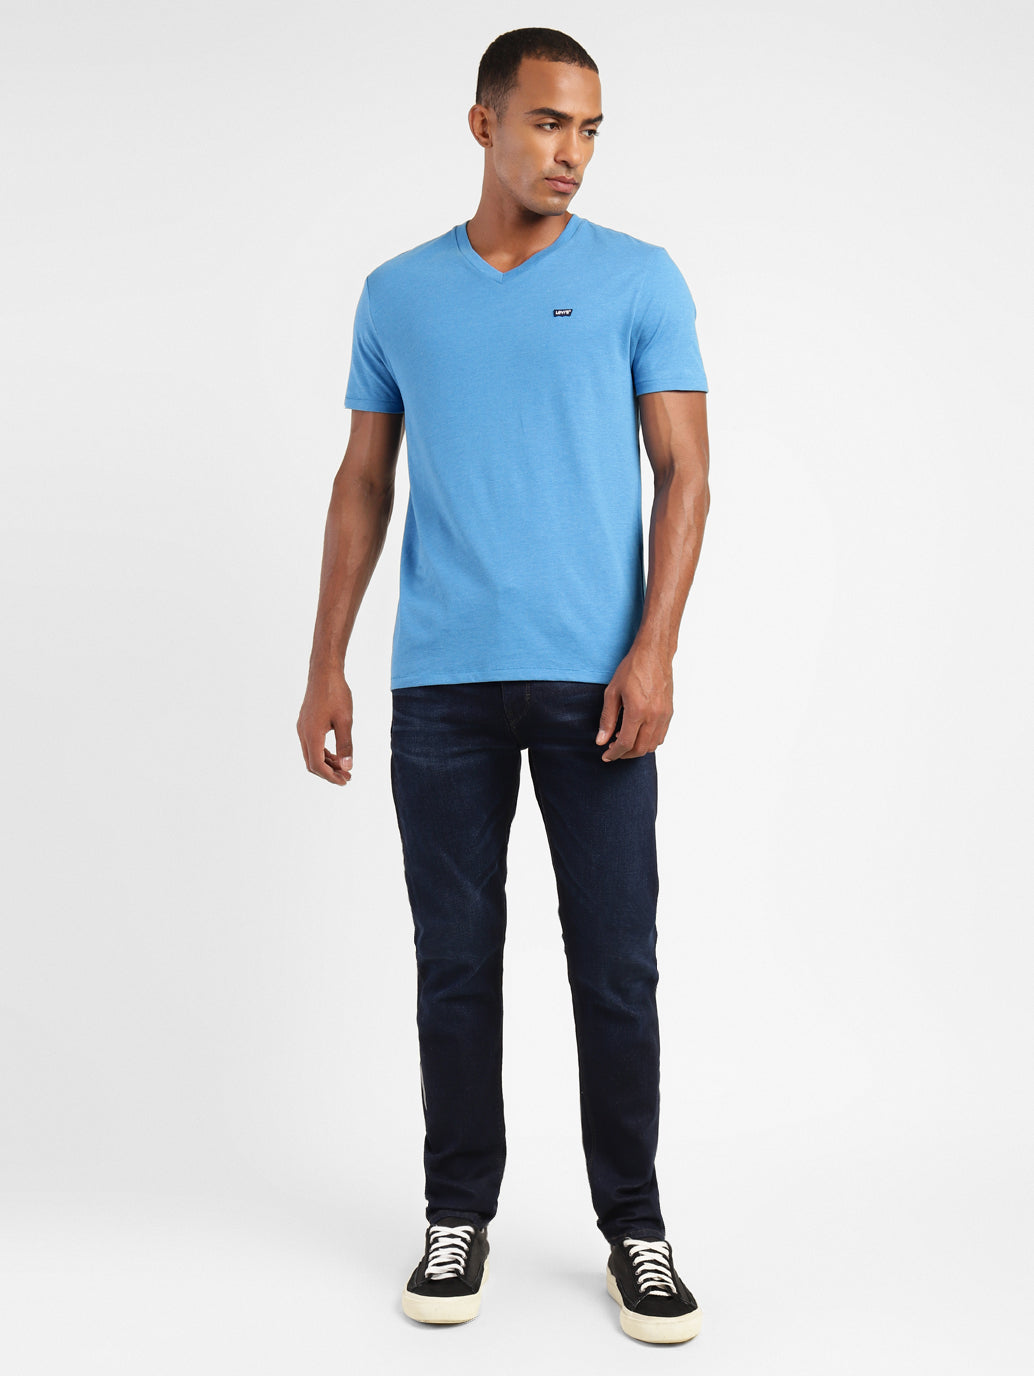 Men's Solid V Neck T-shirt Blue